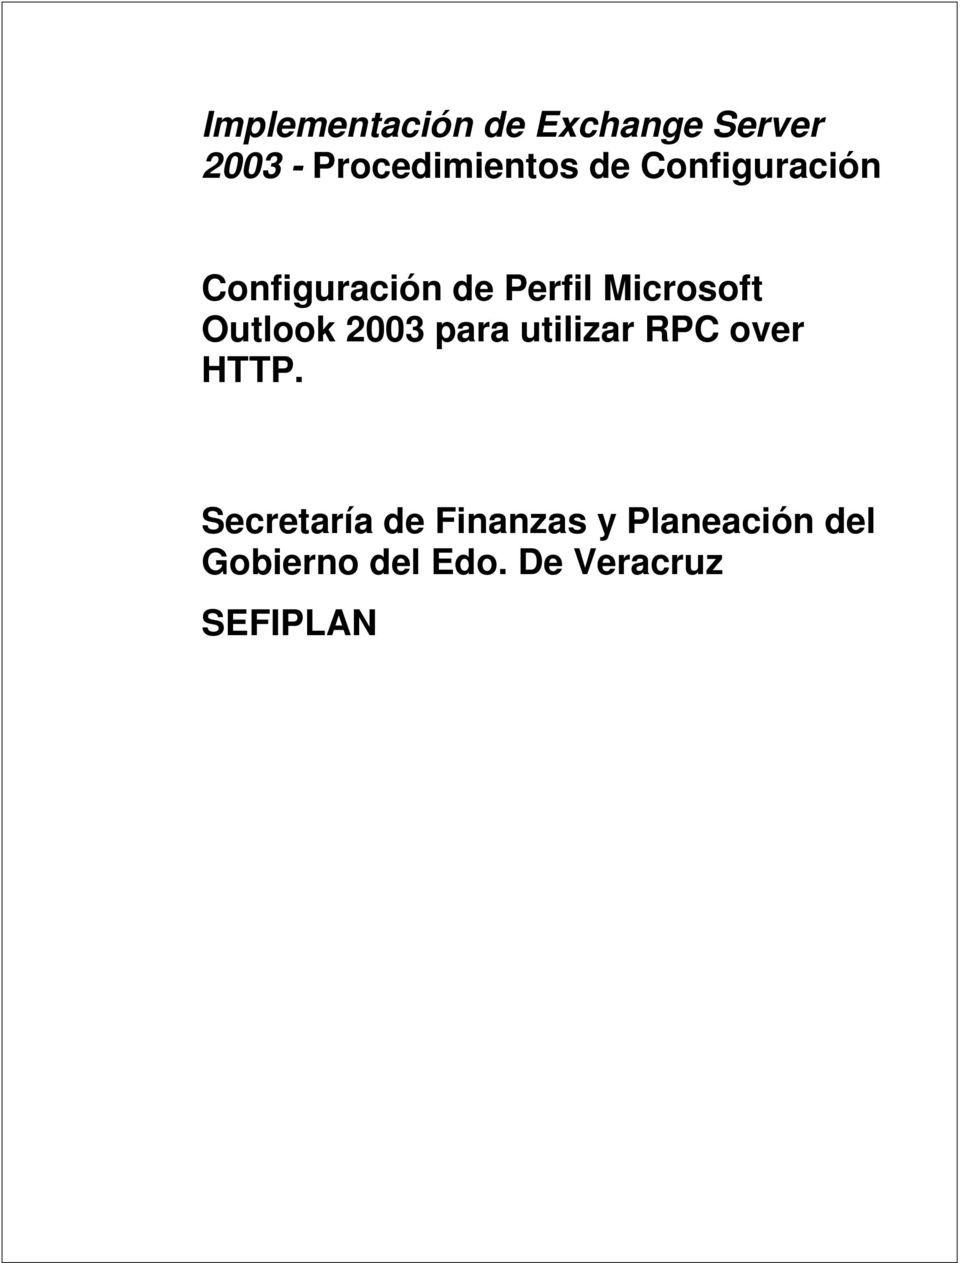 Outlook 2003 para utilizar RPC over HTTP.